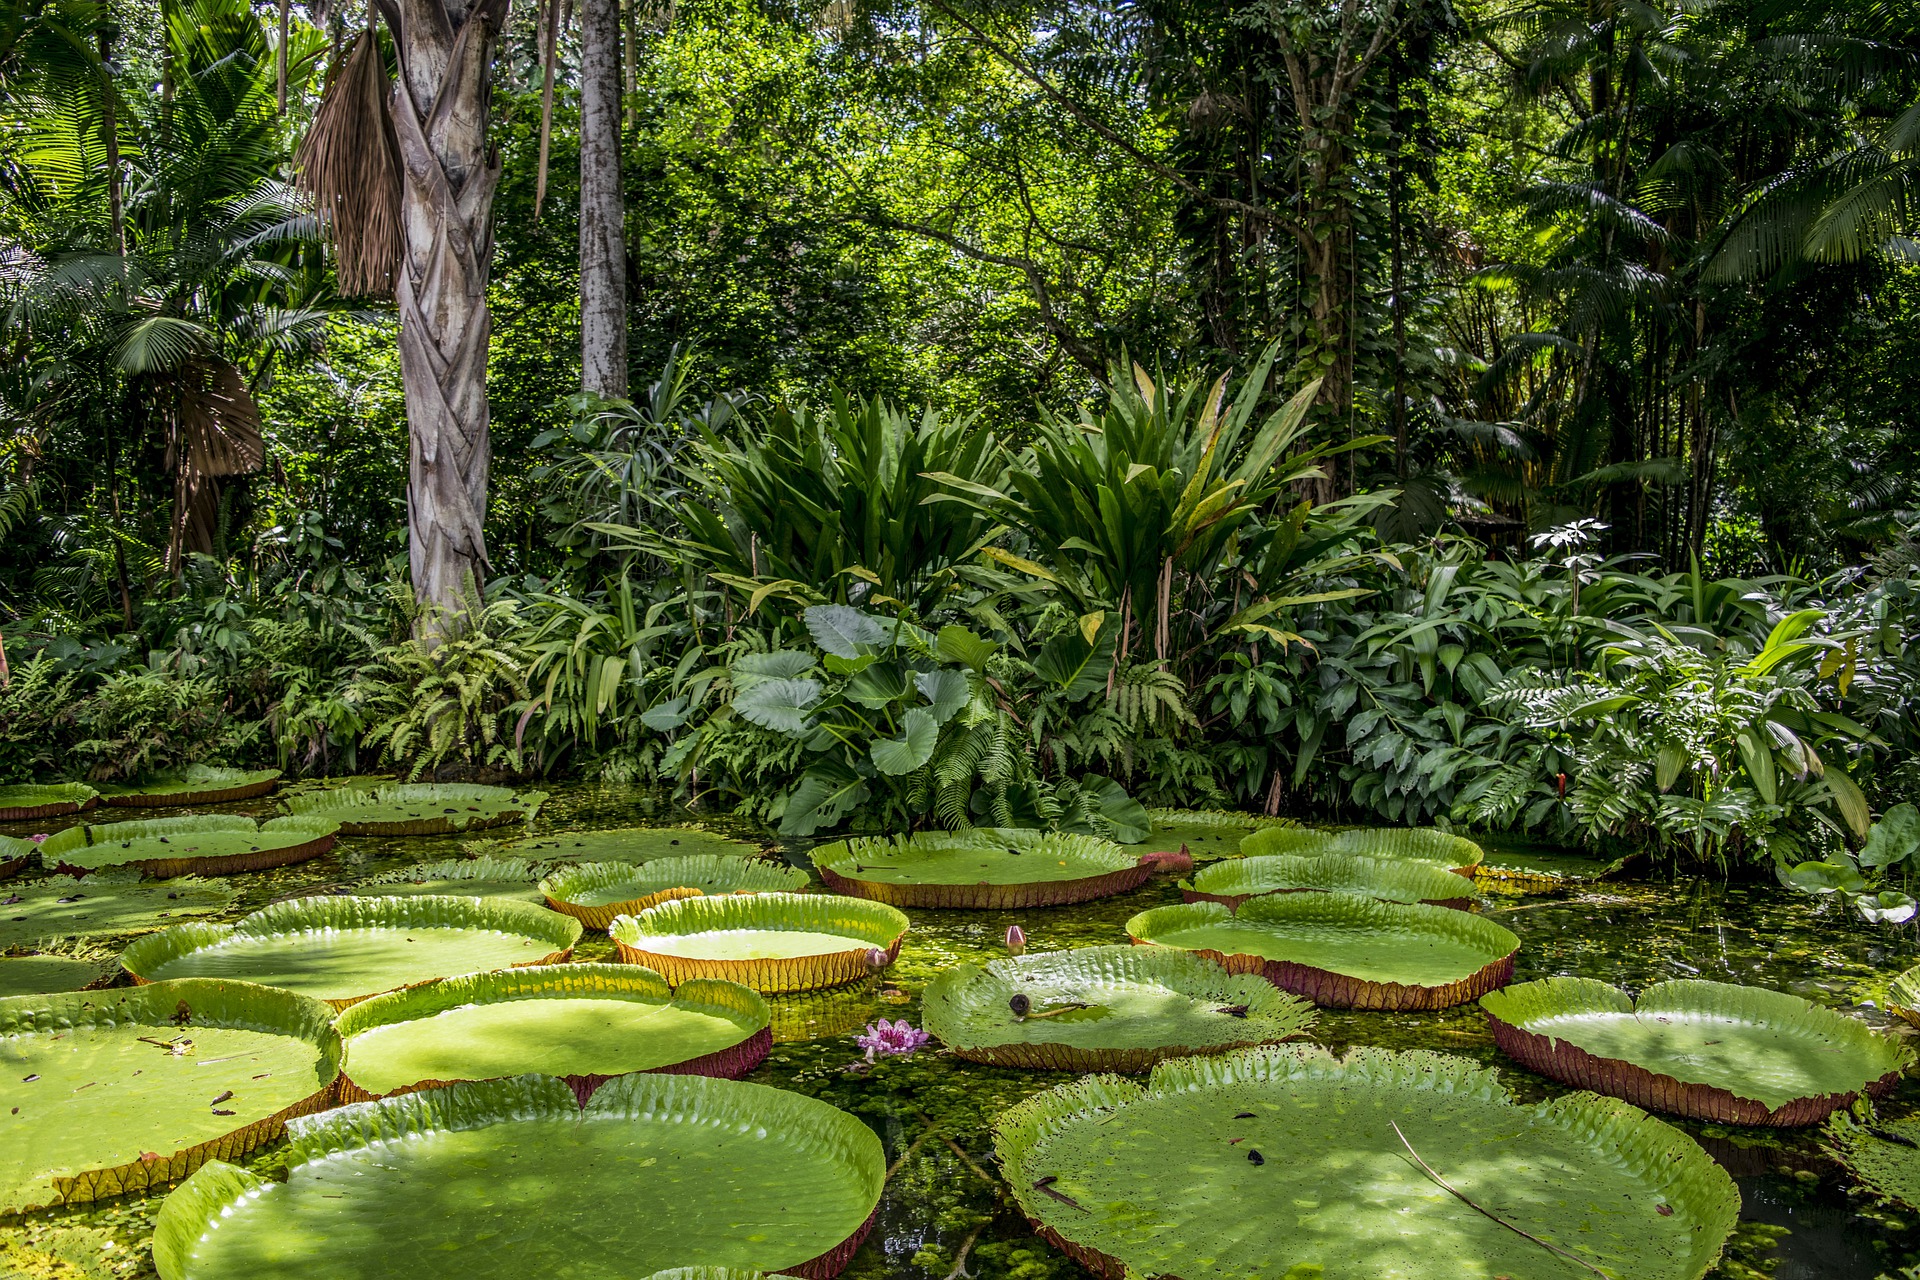 amazon rainforest tourism facts